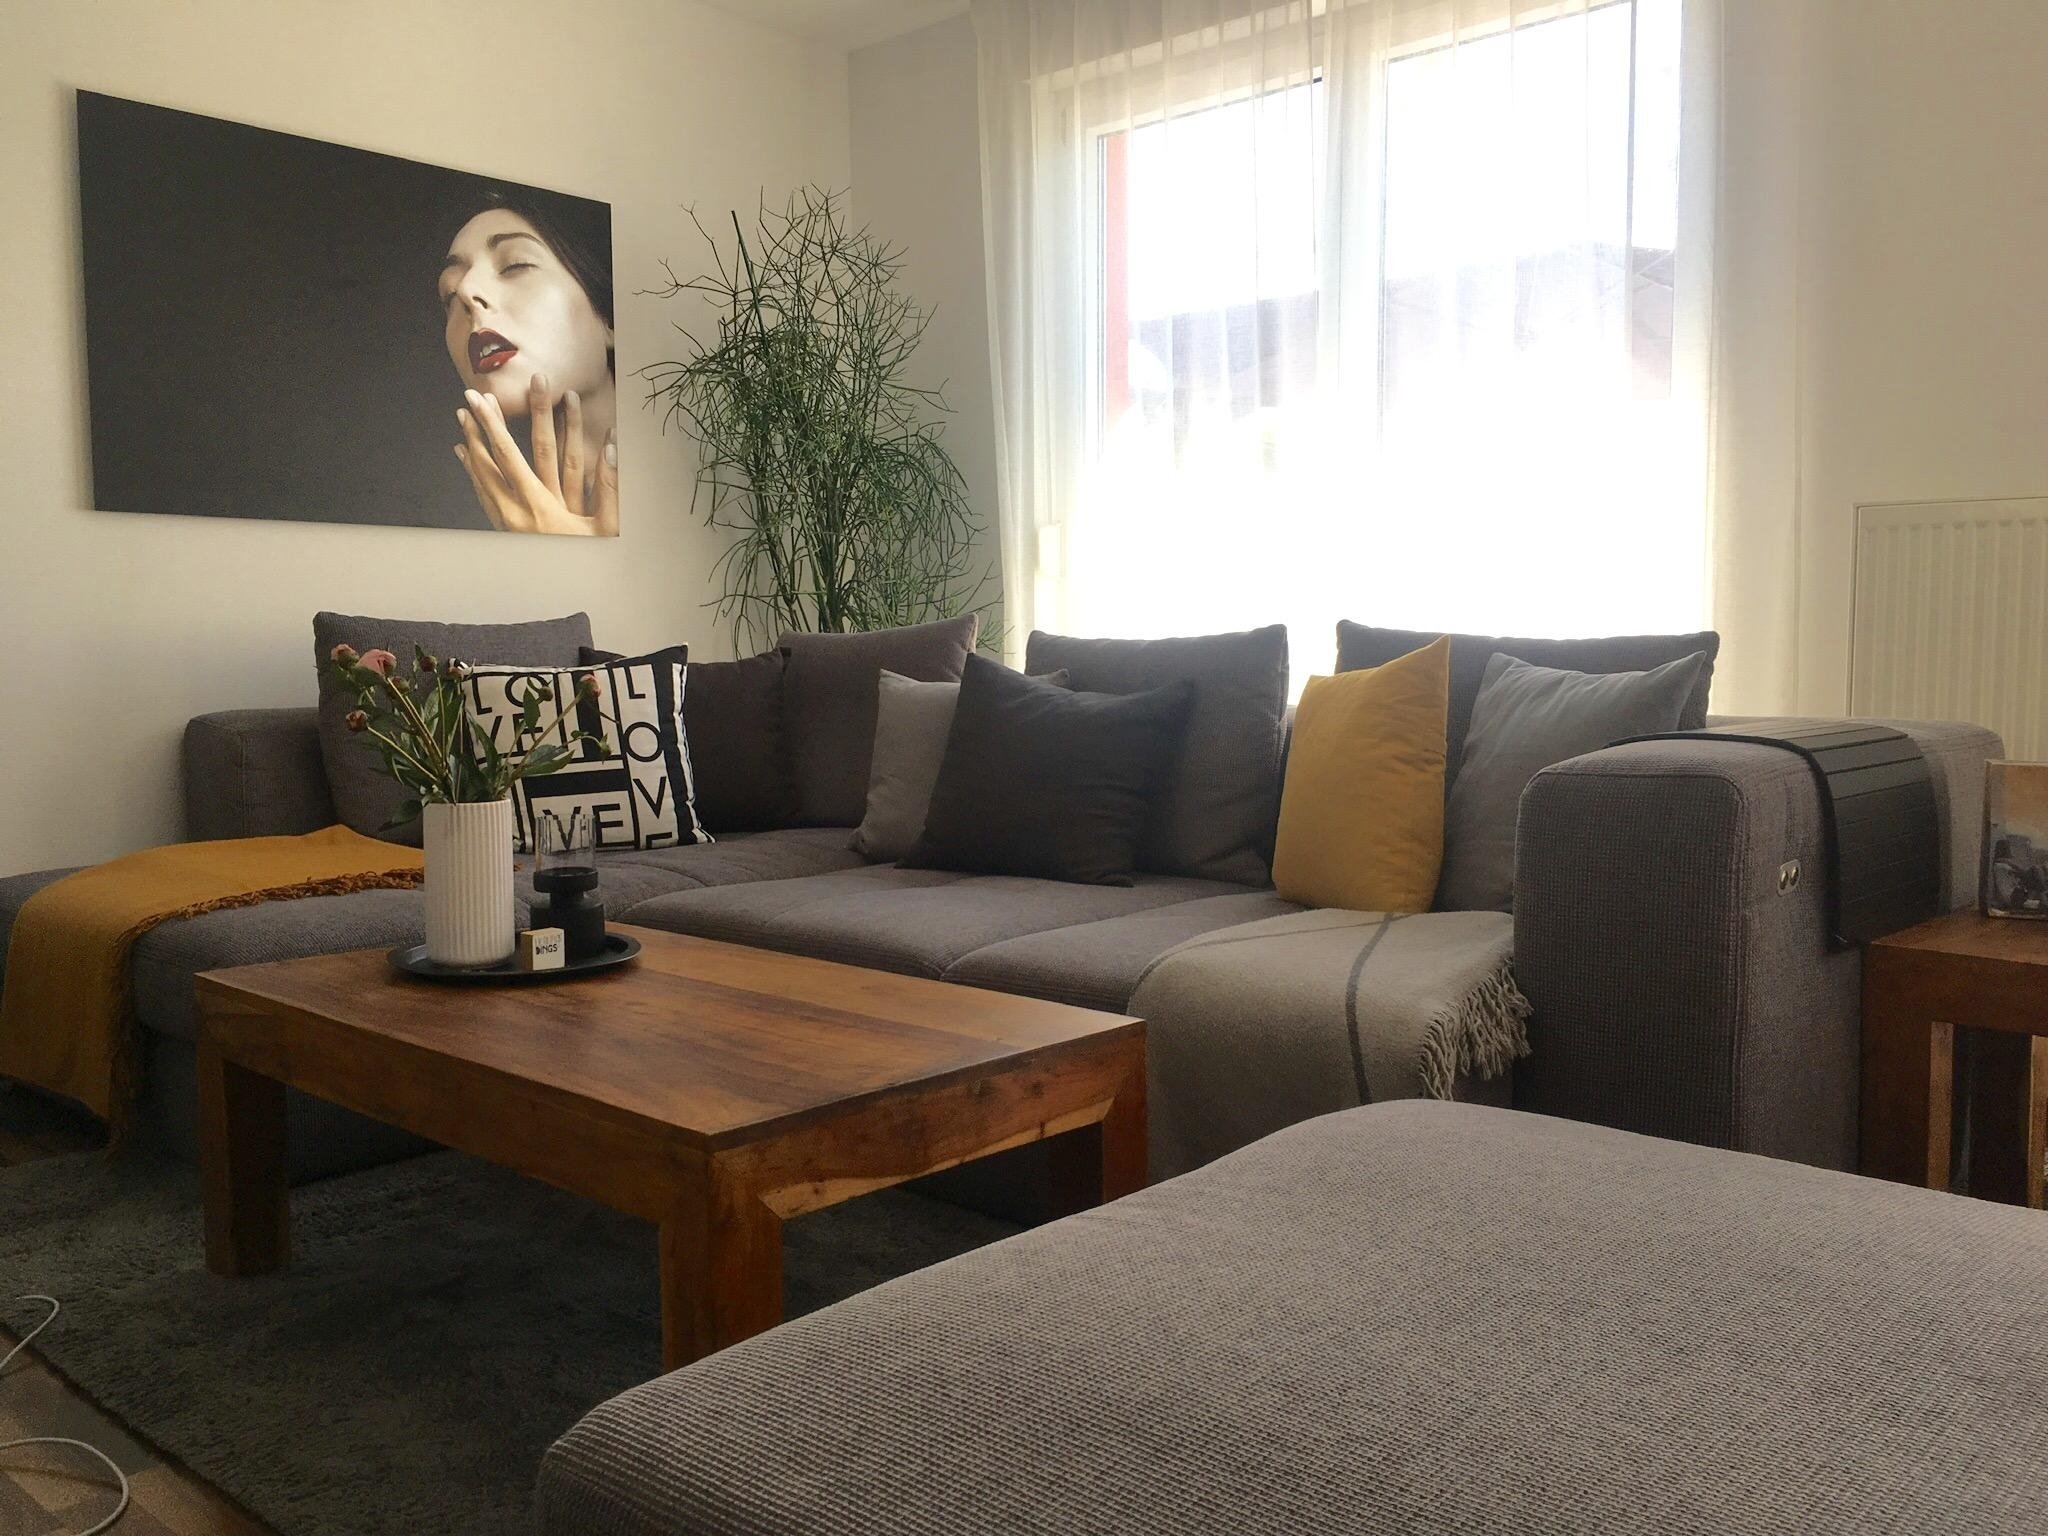 Unsere neue Couch #livingchallenge #wohnzimmergestaltung #couch # grauessofa #wohnzimmer #interior 